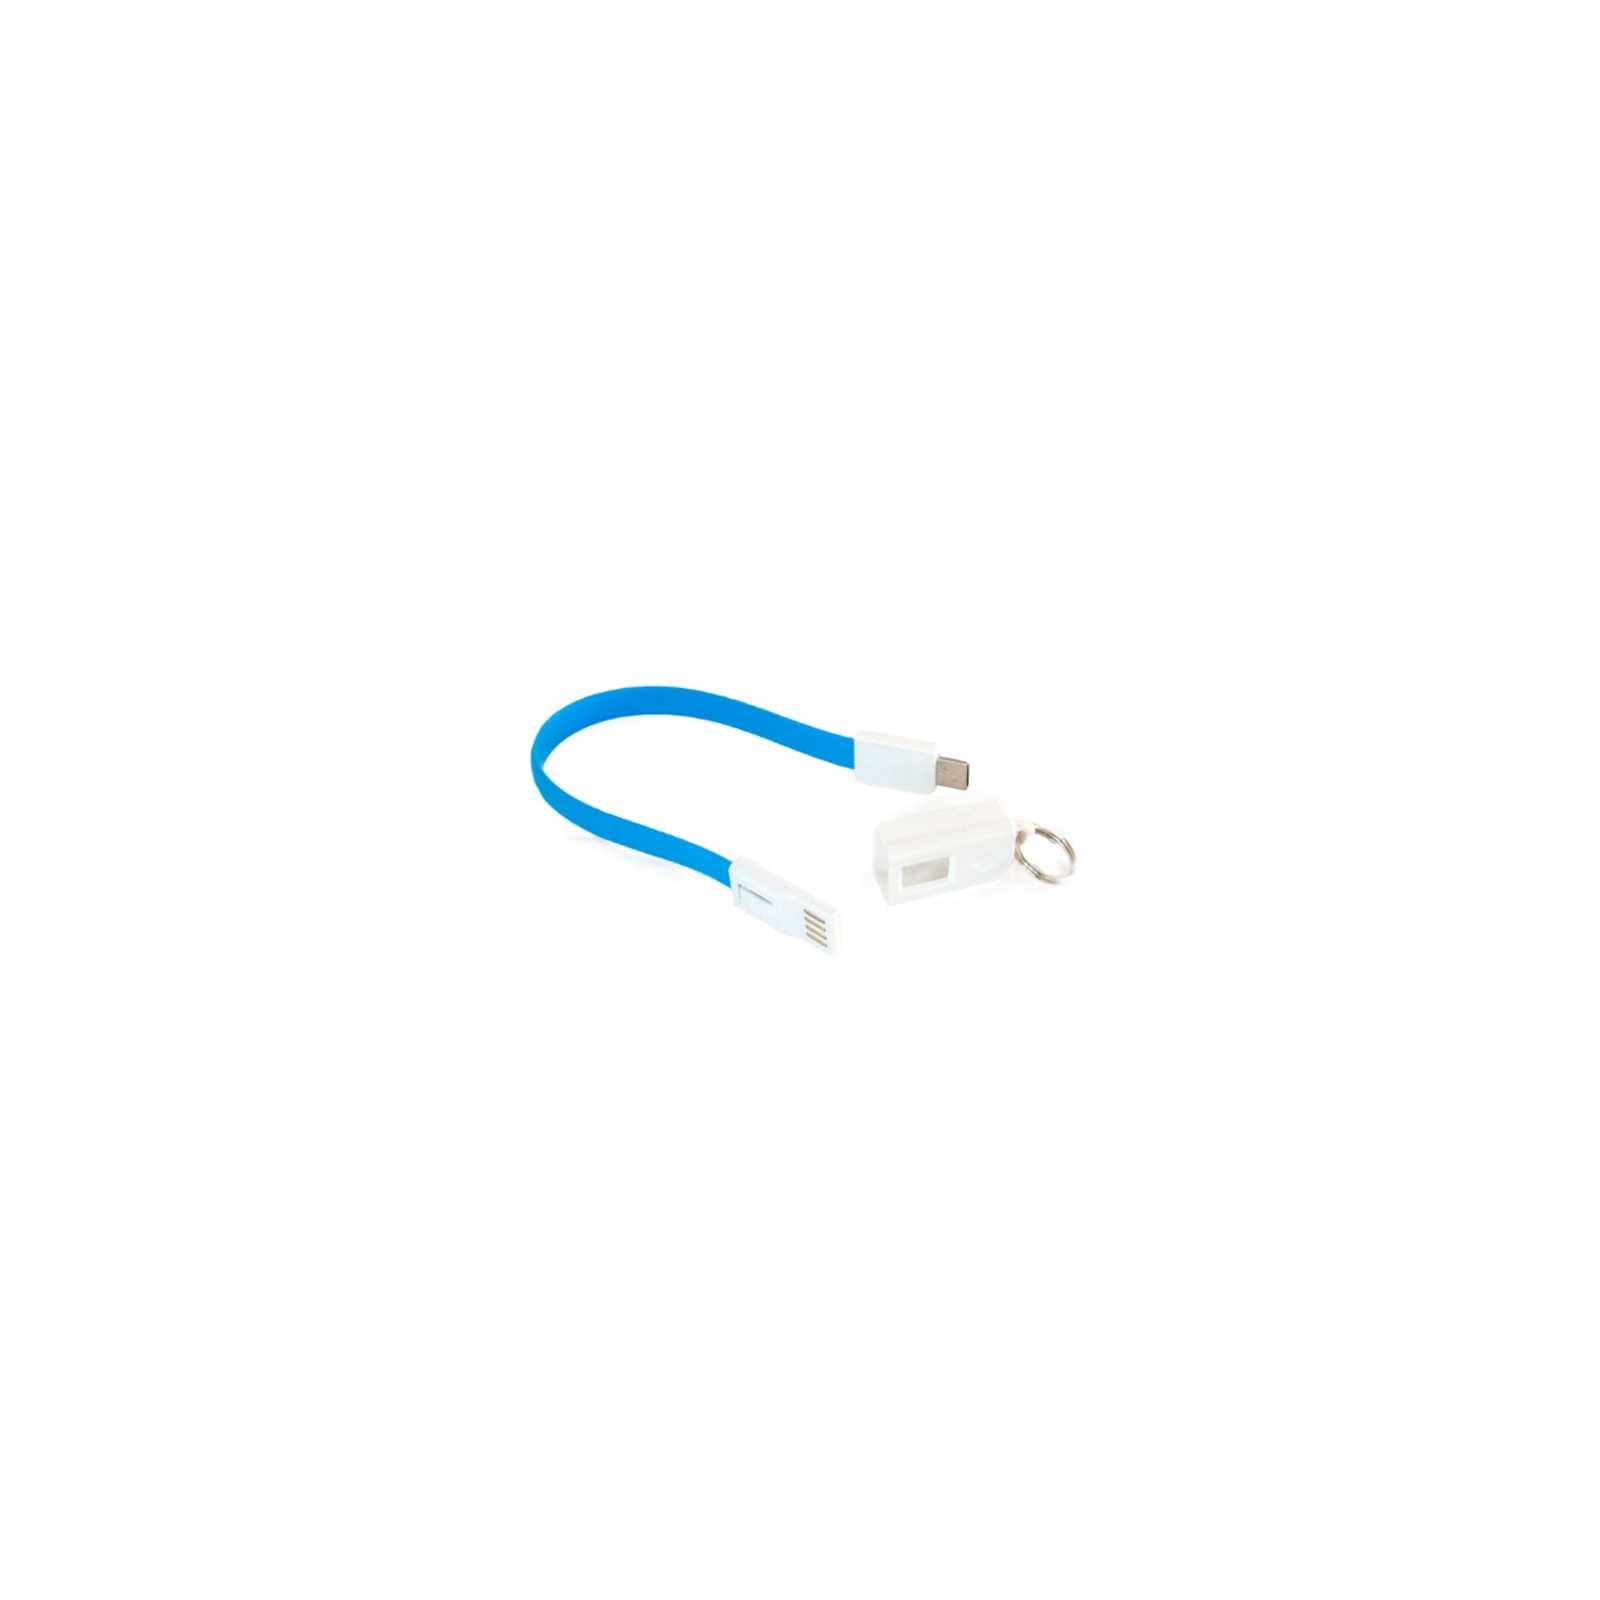 Дата кабель USB 2.0 AM to Type-C 0.18m blue Extradigital (KBU1787) изображение 2